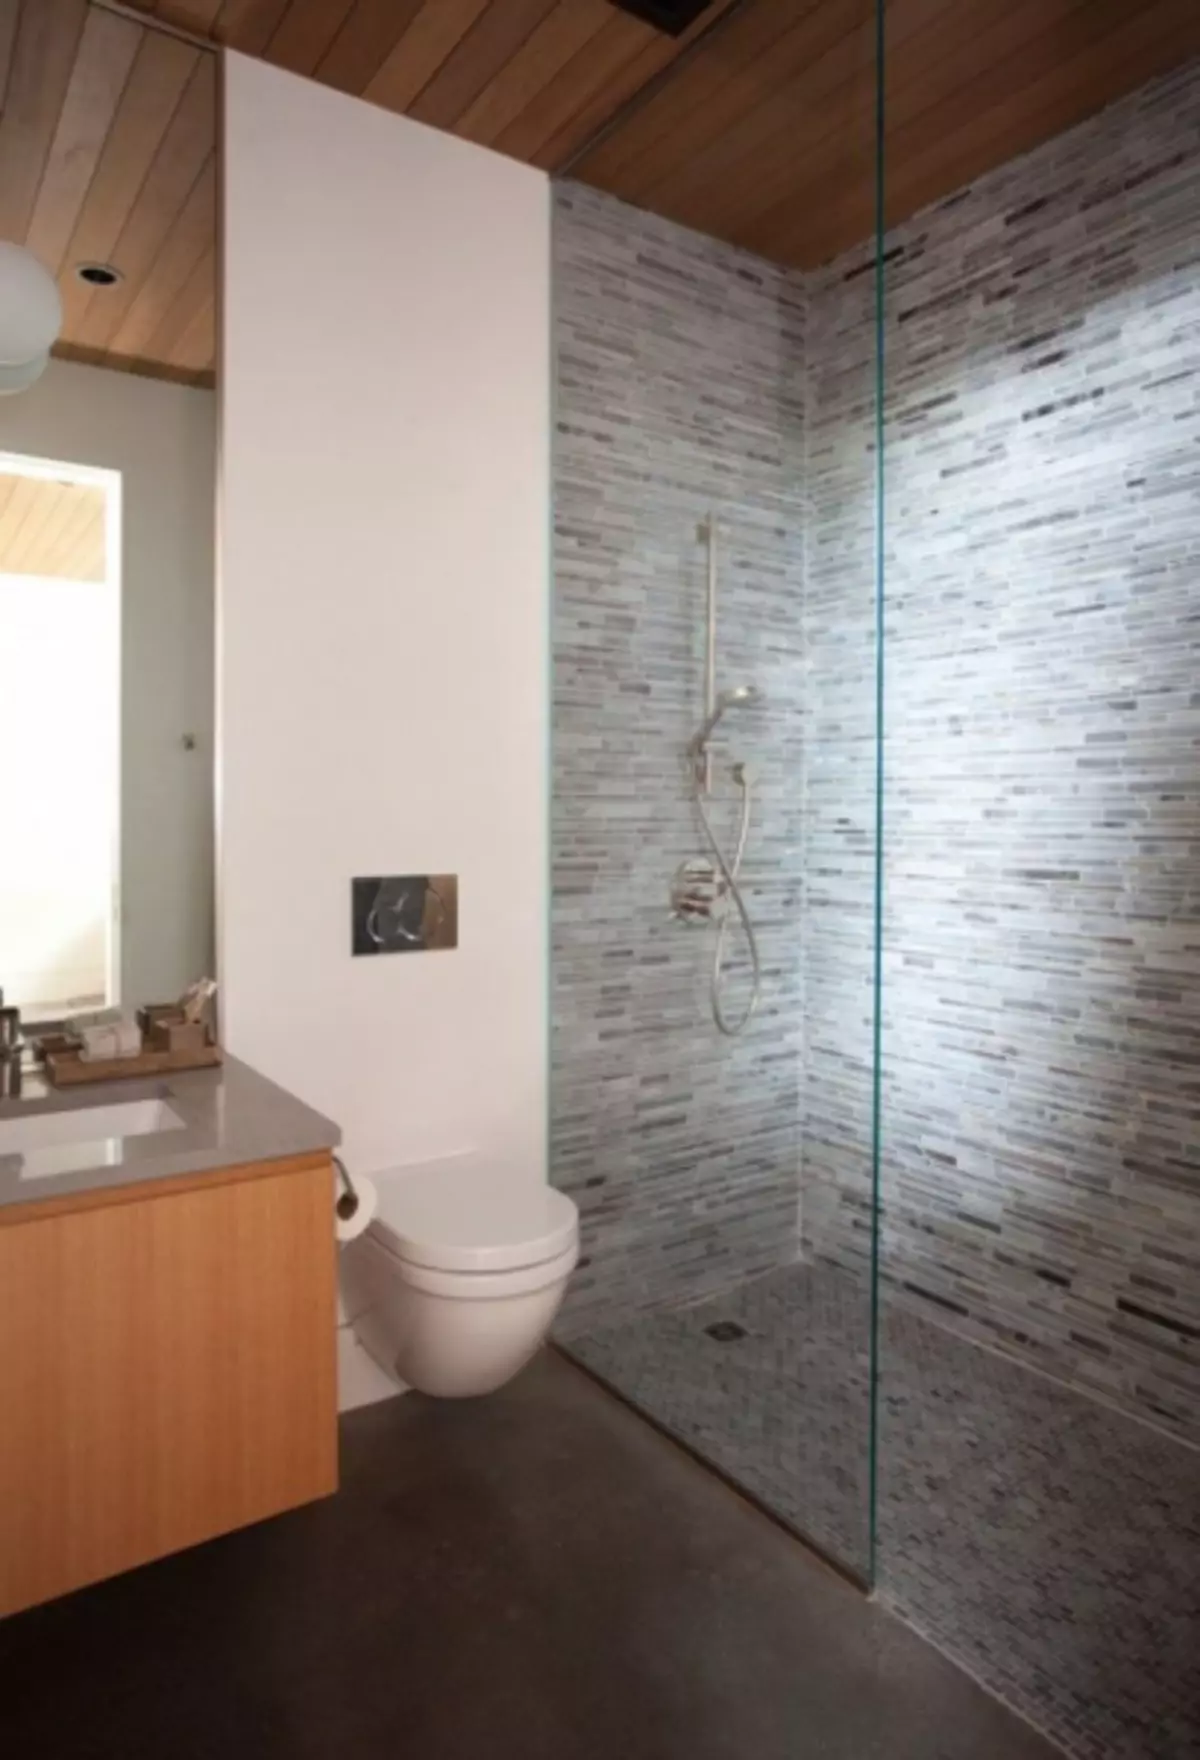 Interior de baño combinado con baño: como facer moi ben e práctico no pequeno espazo (38 fotos)